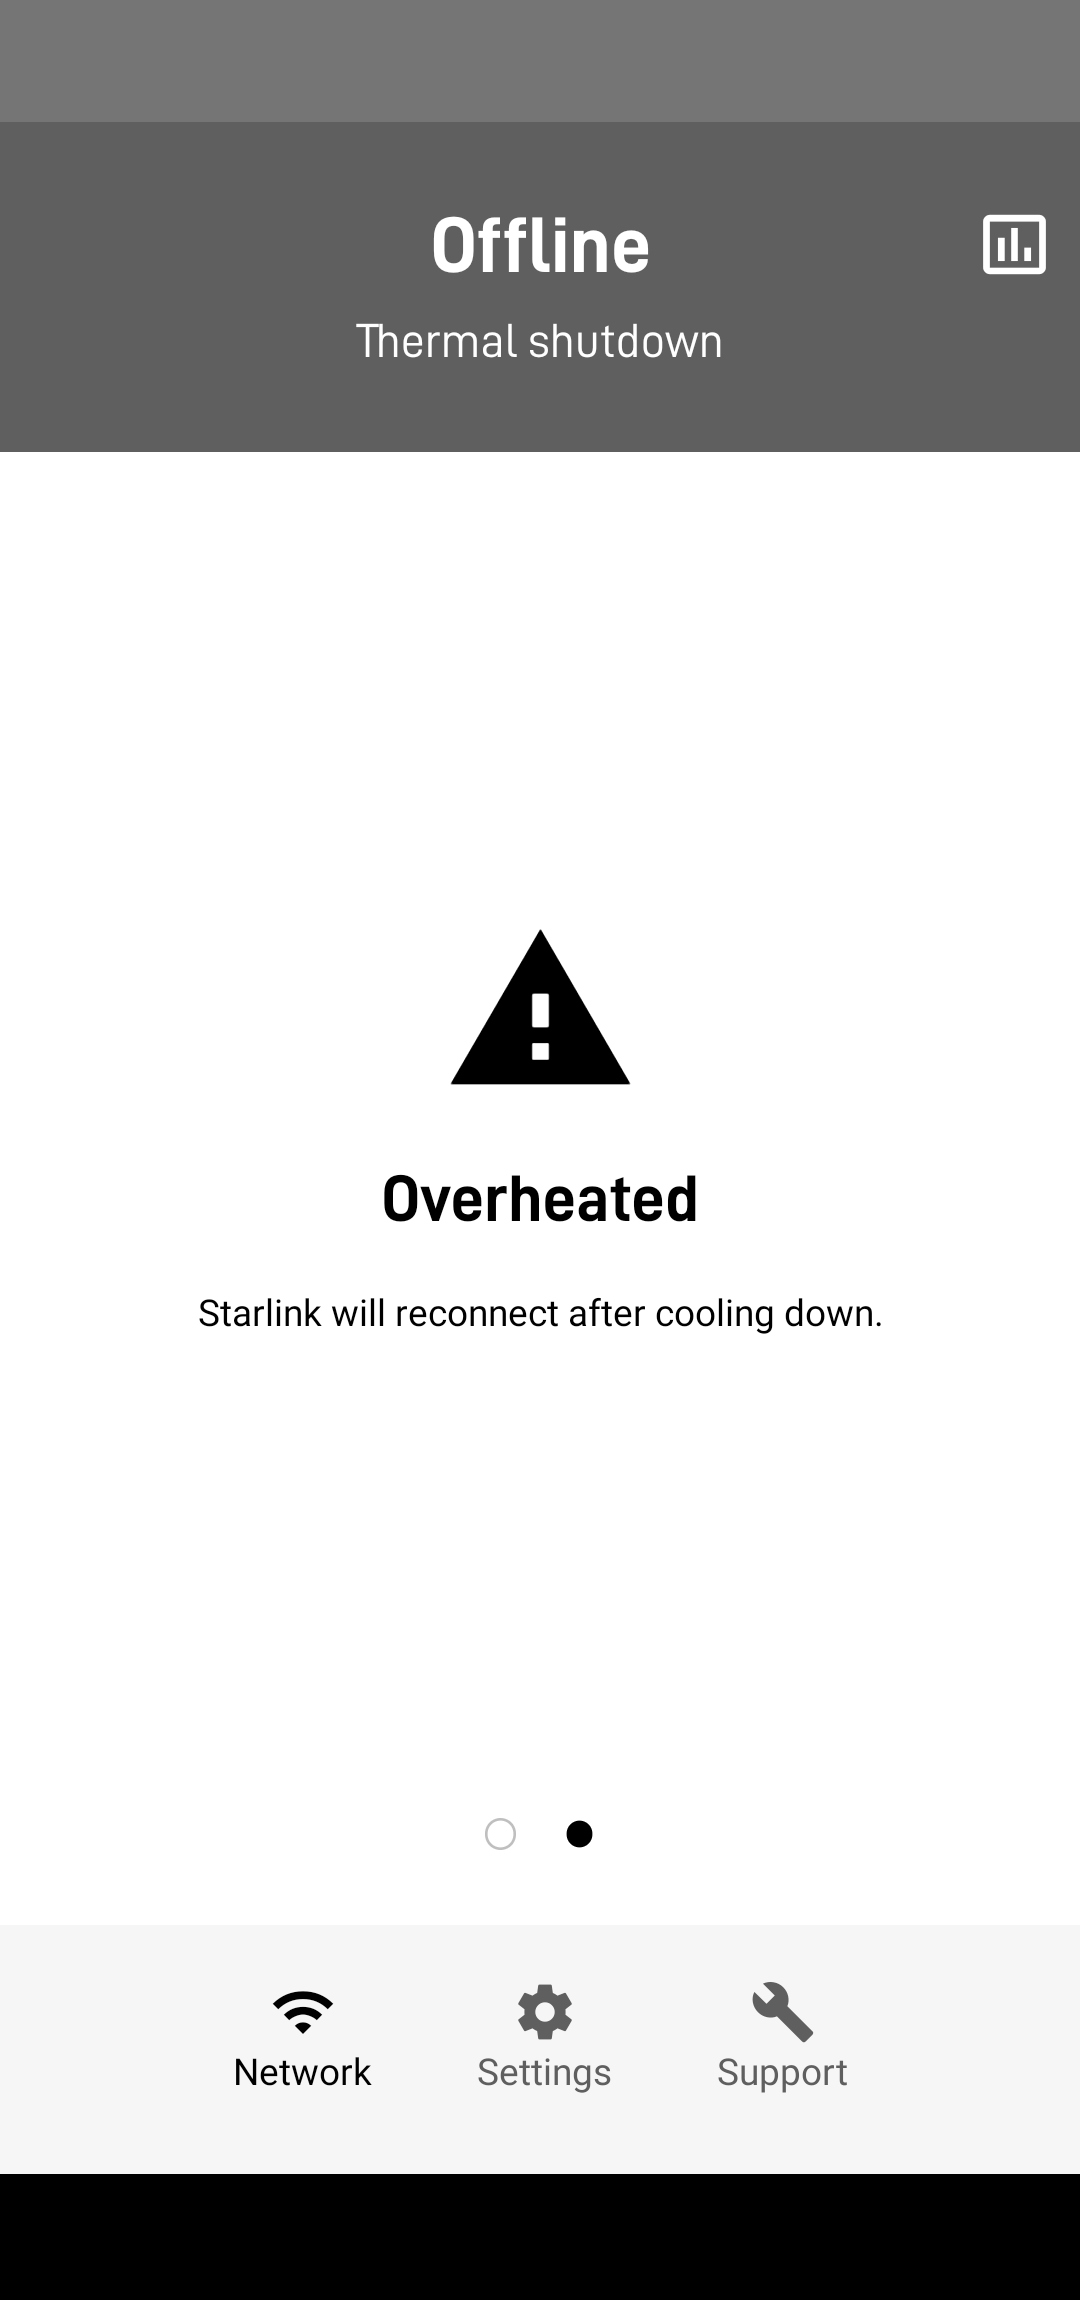 SpaceX 的 Starlink 卫星互联网设备无法承受 50 度高温